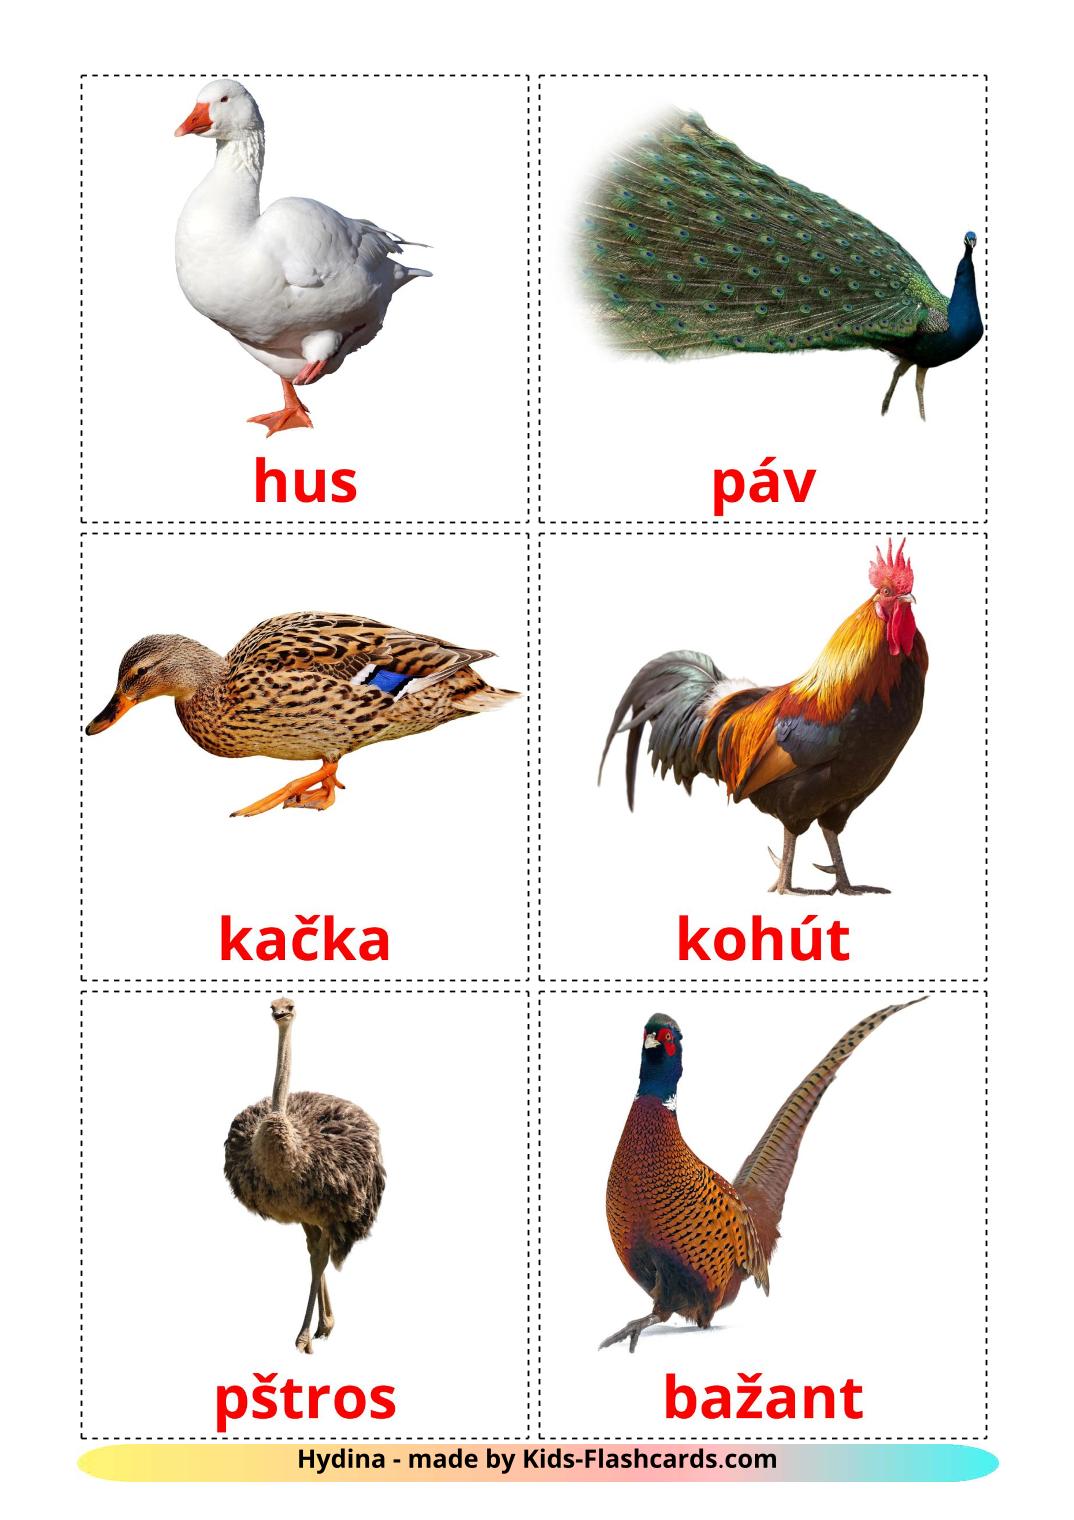 Les Oiseaux de Ferme - 11 Flashcards slovaque imprimables gratuitement